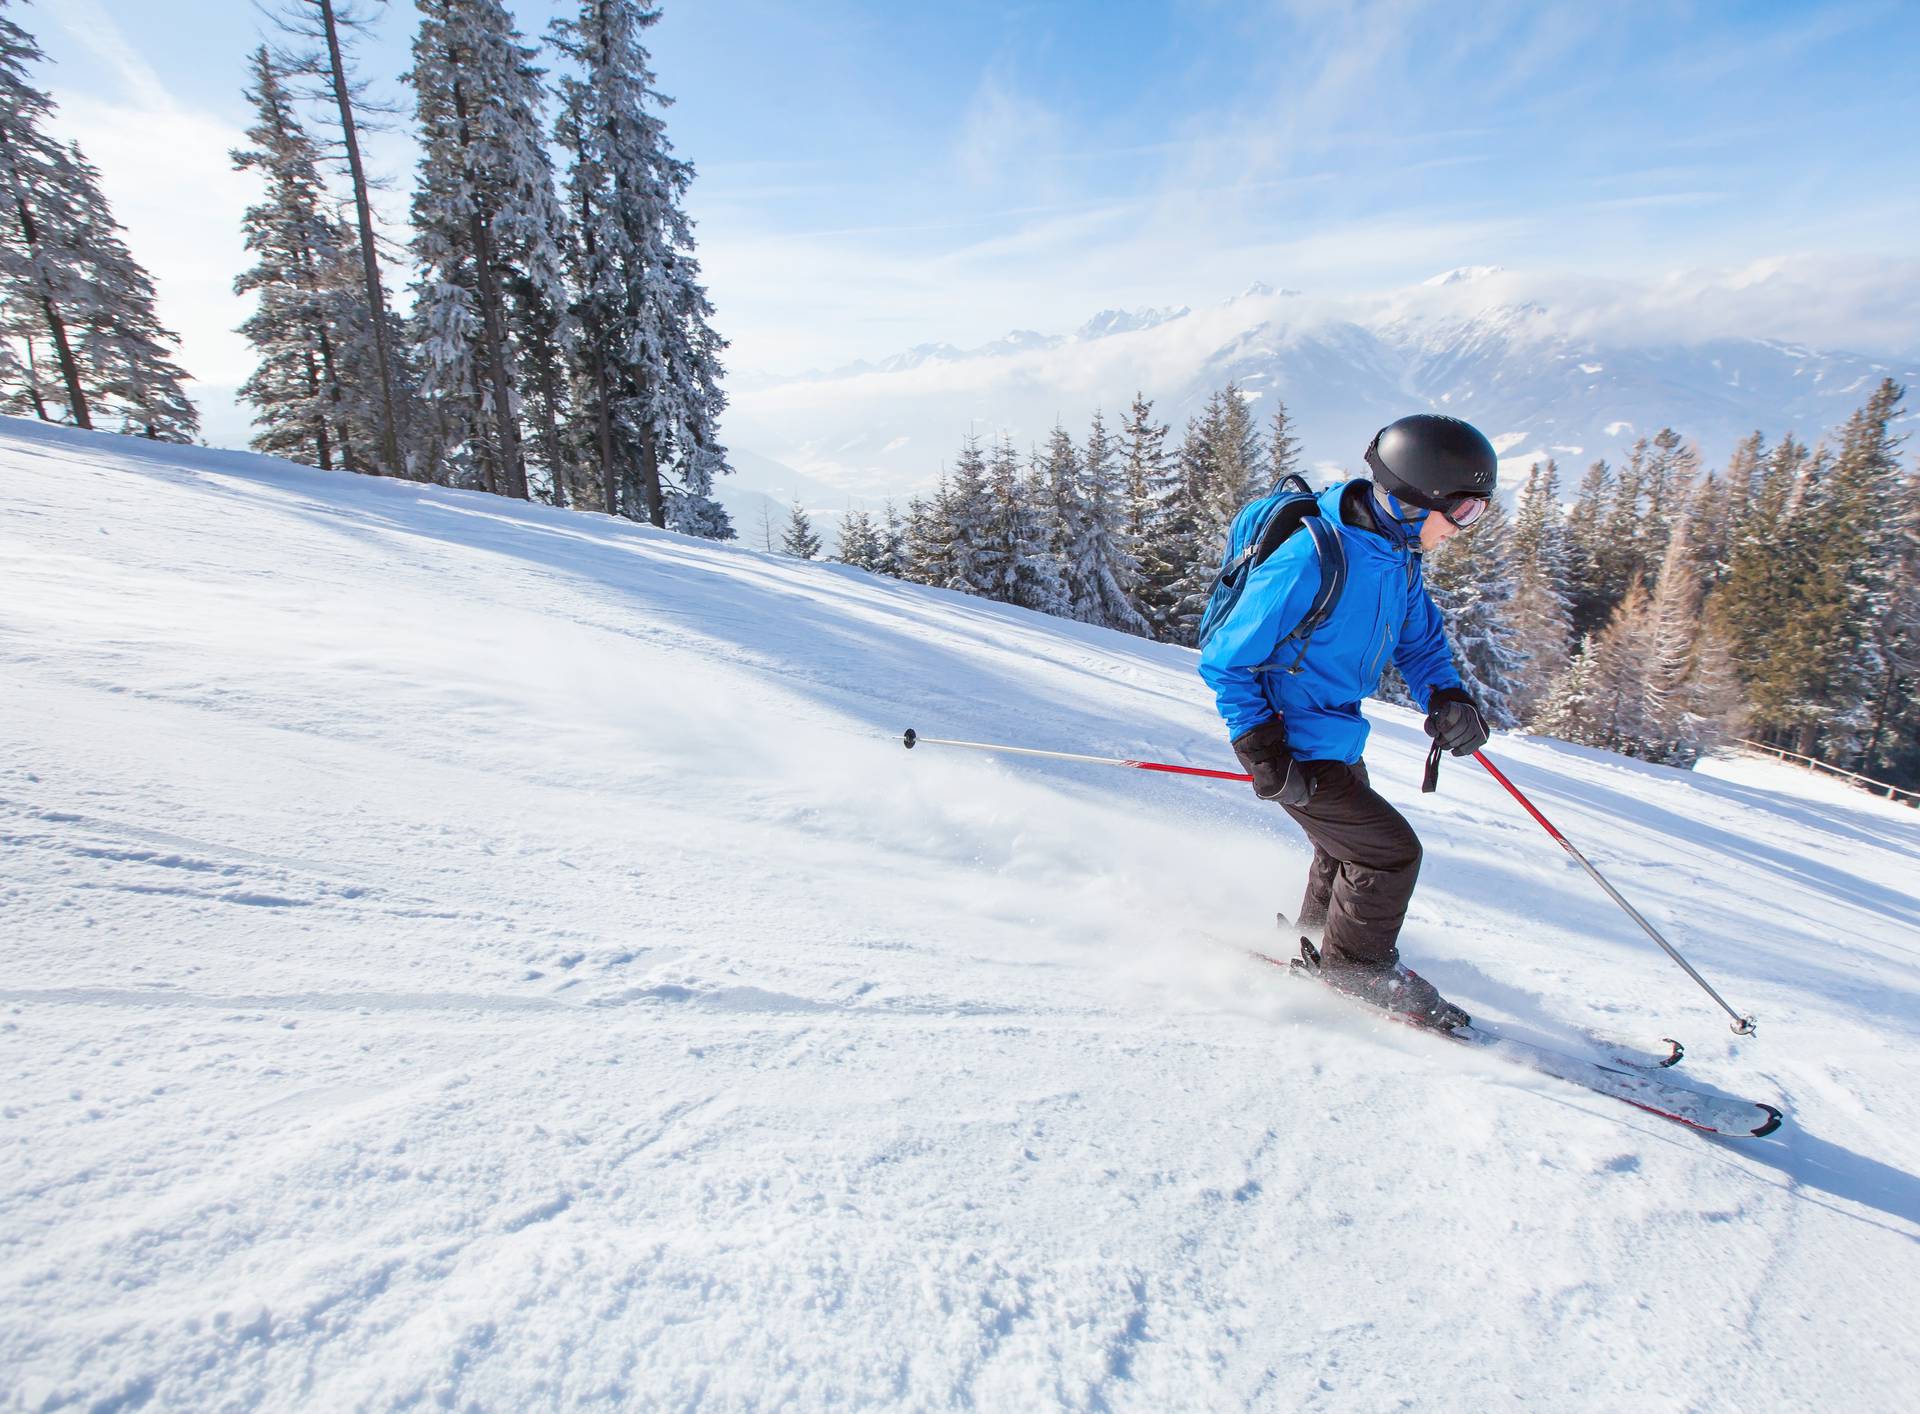 Italija sada nudi najjeftinija skijališta, pretekla je Bugarsku